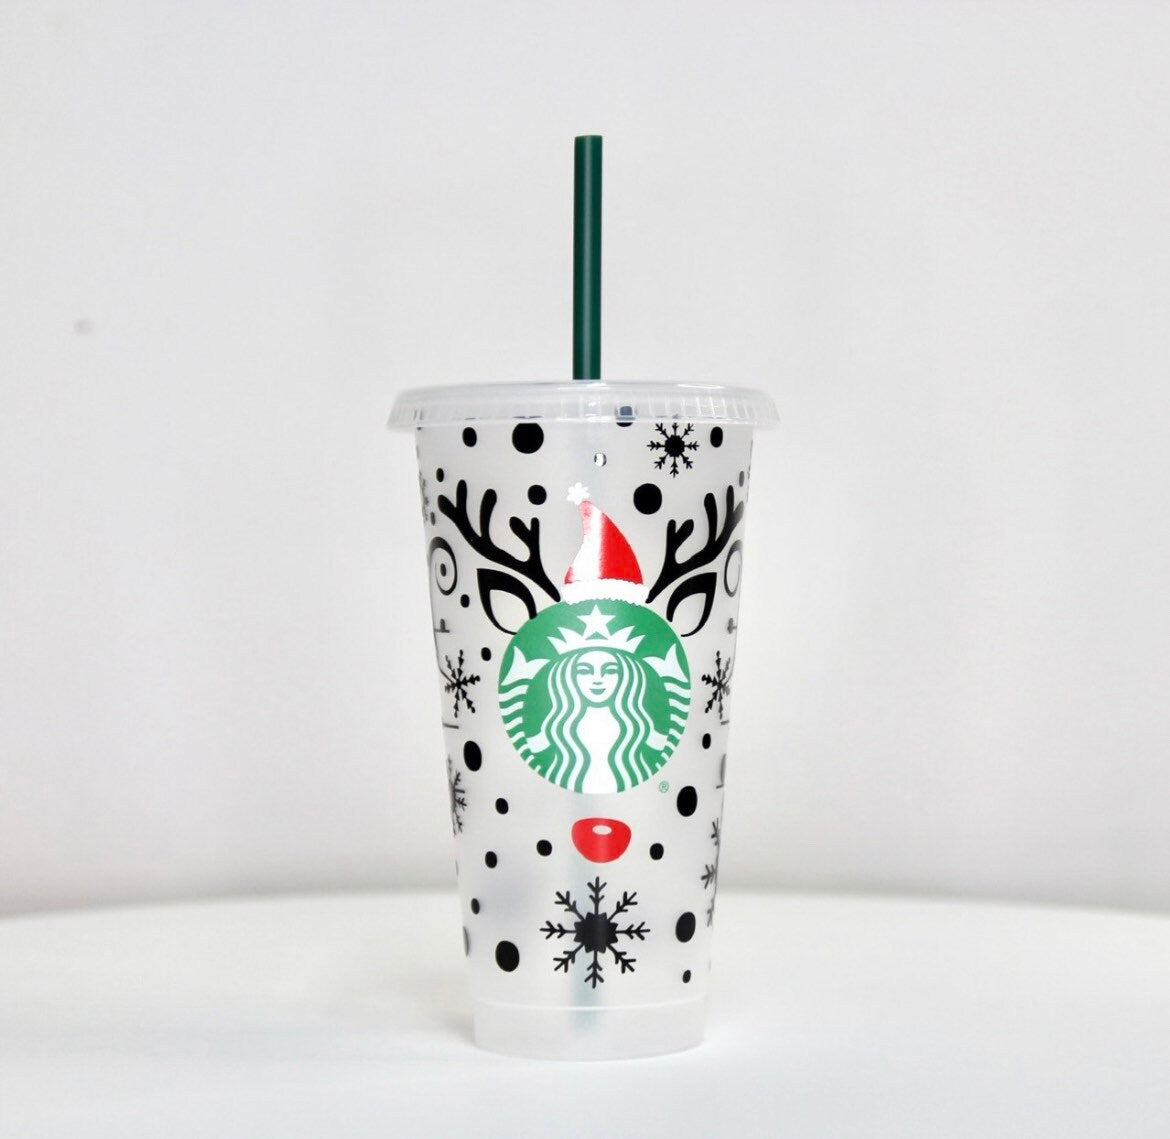 The Best Custom Starbucks Cups for Teachers - We Are Teachers